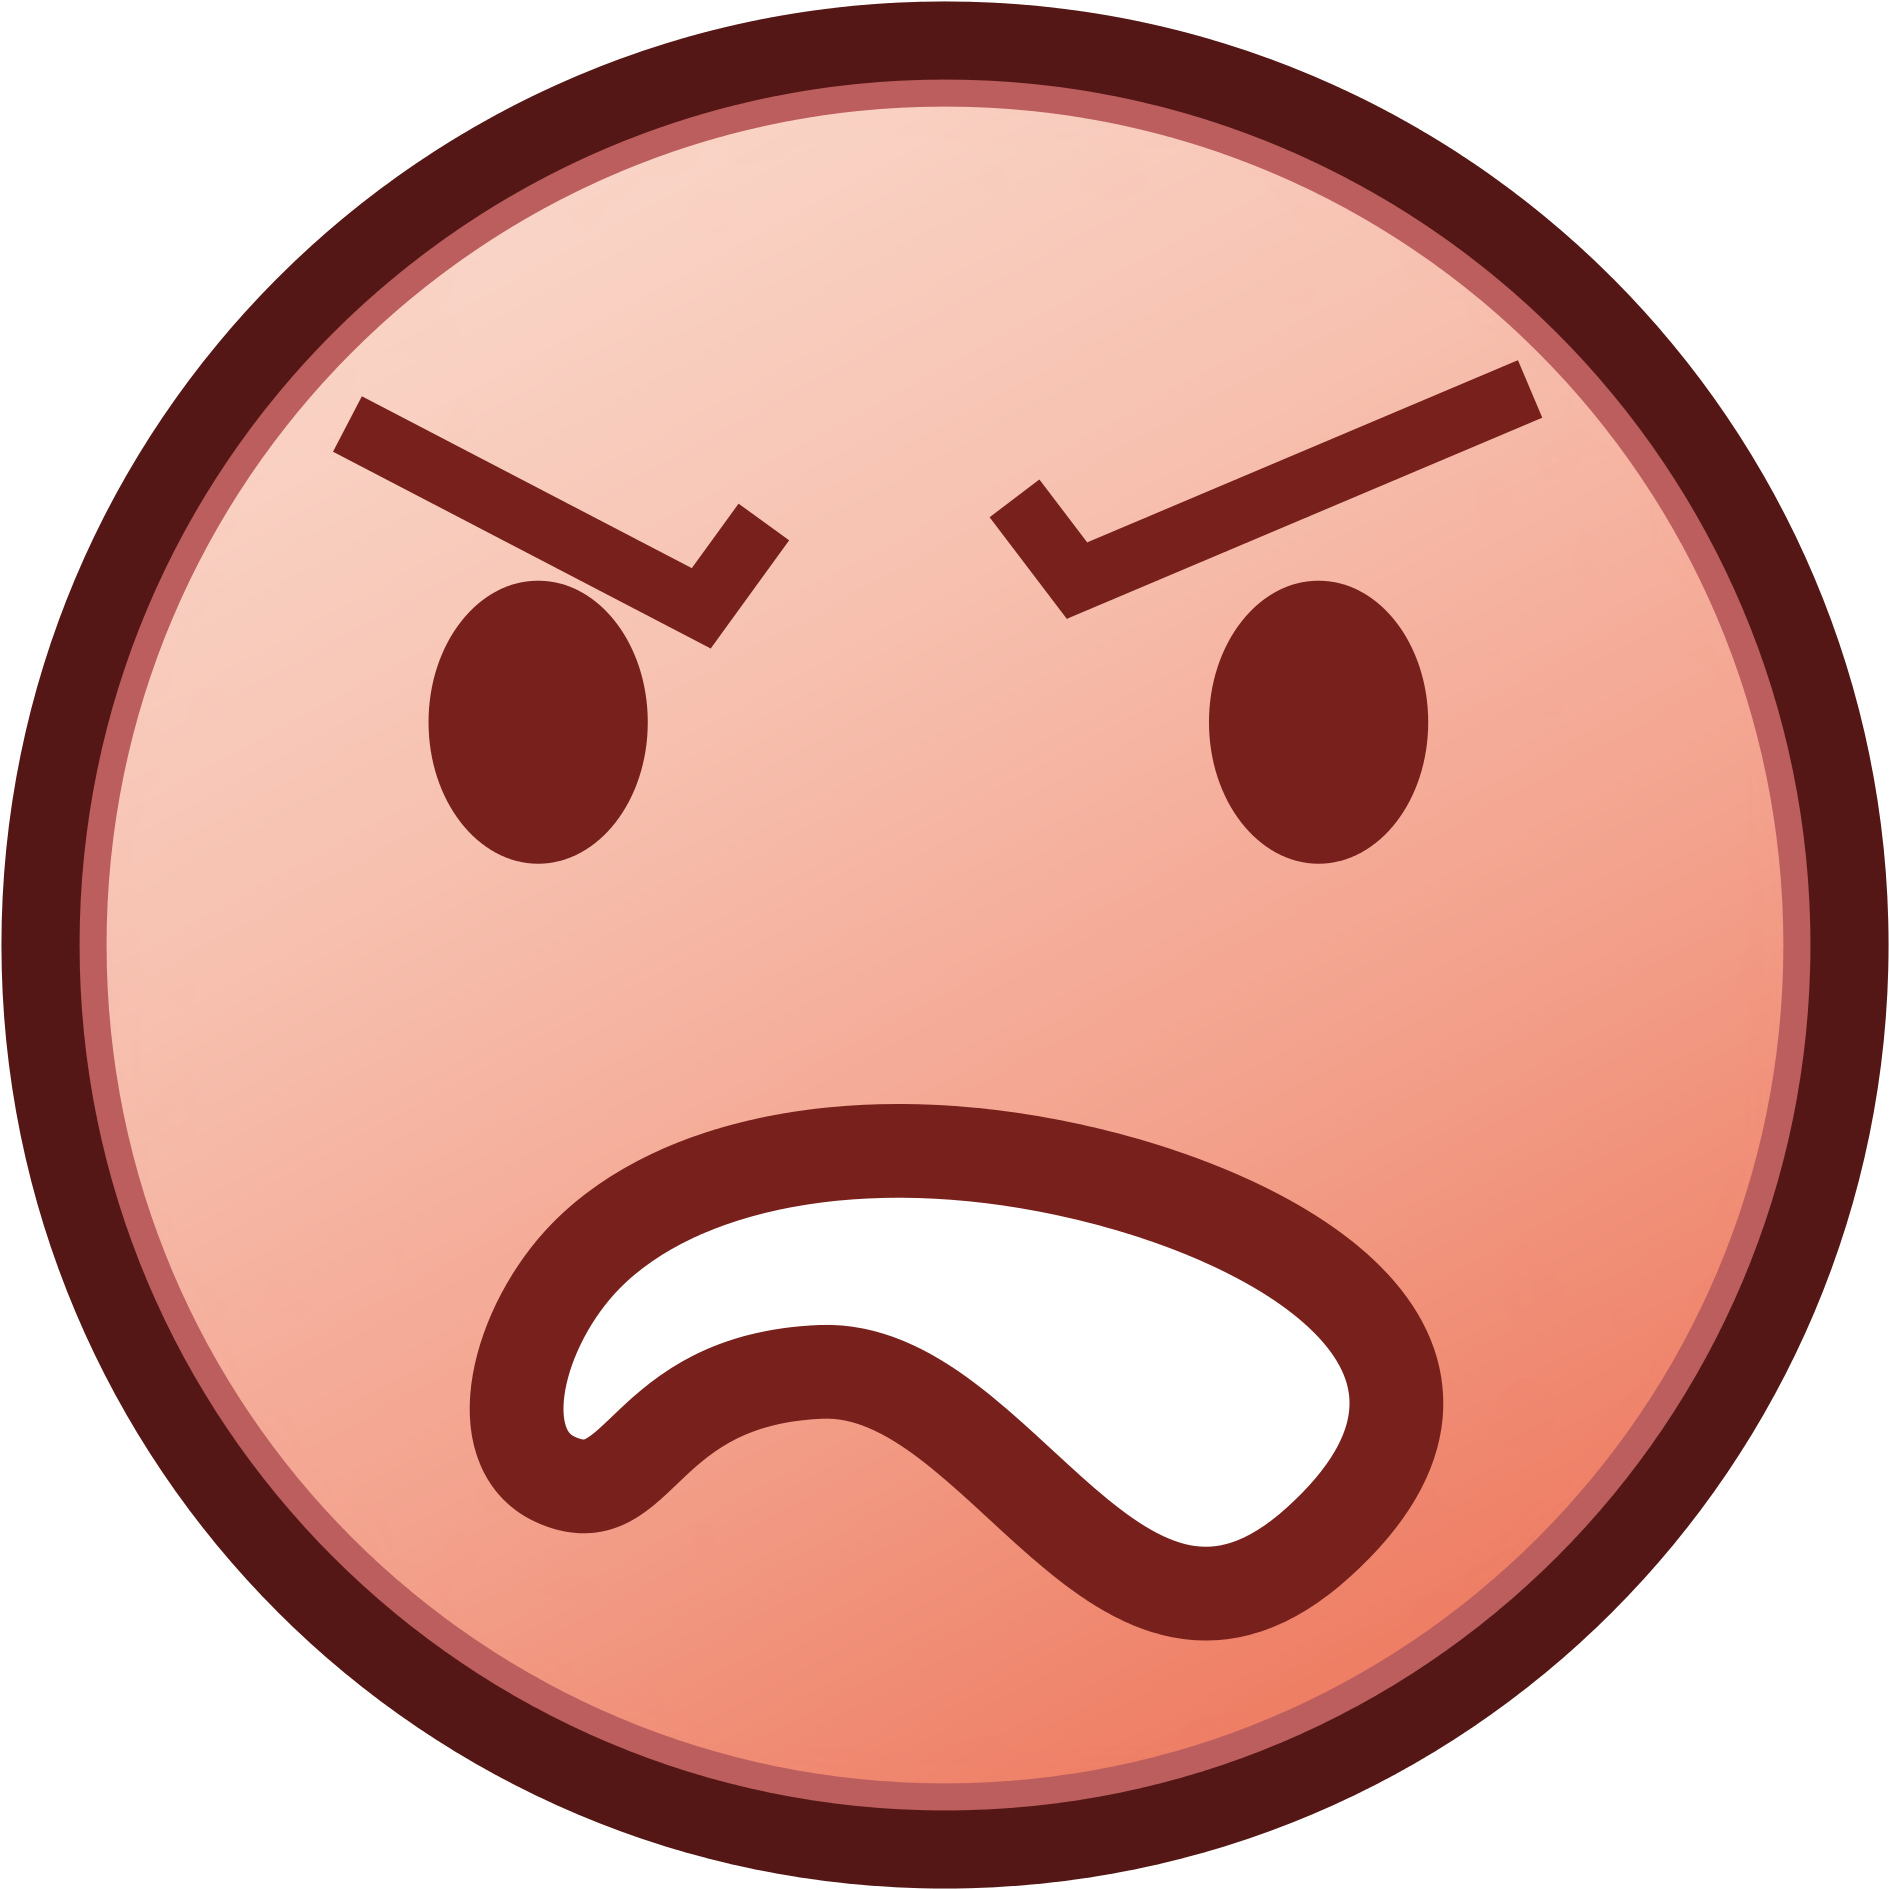 Angry Emoji PNG Free Image